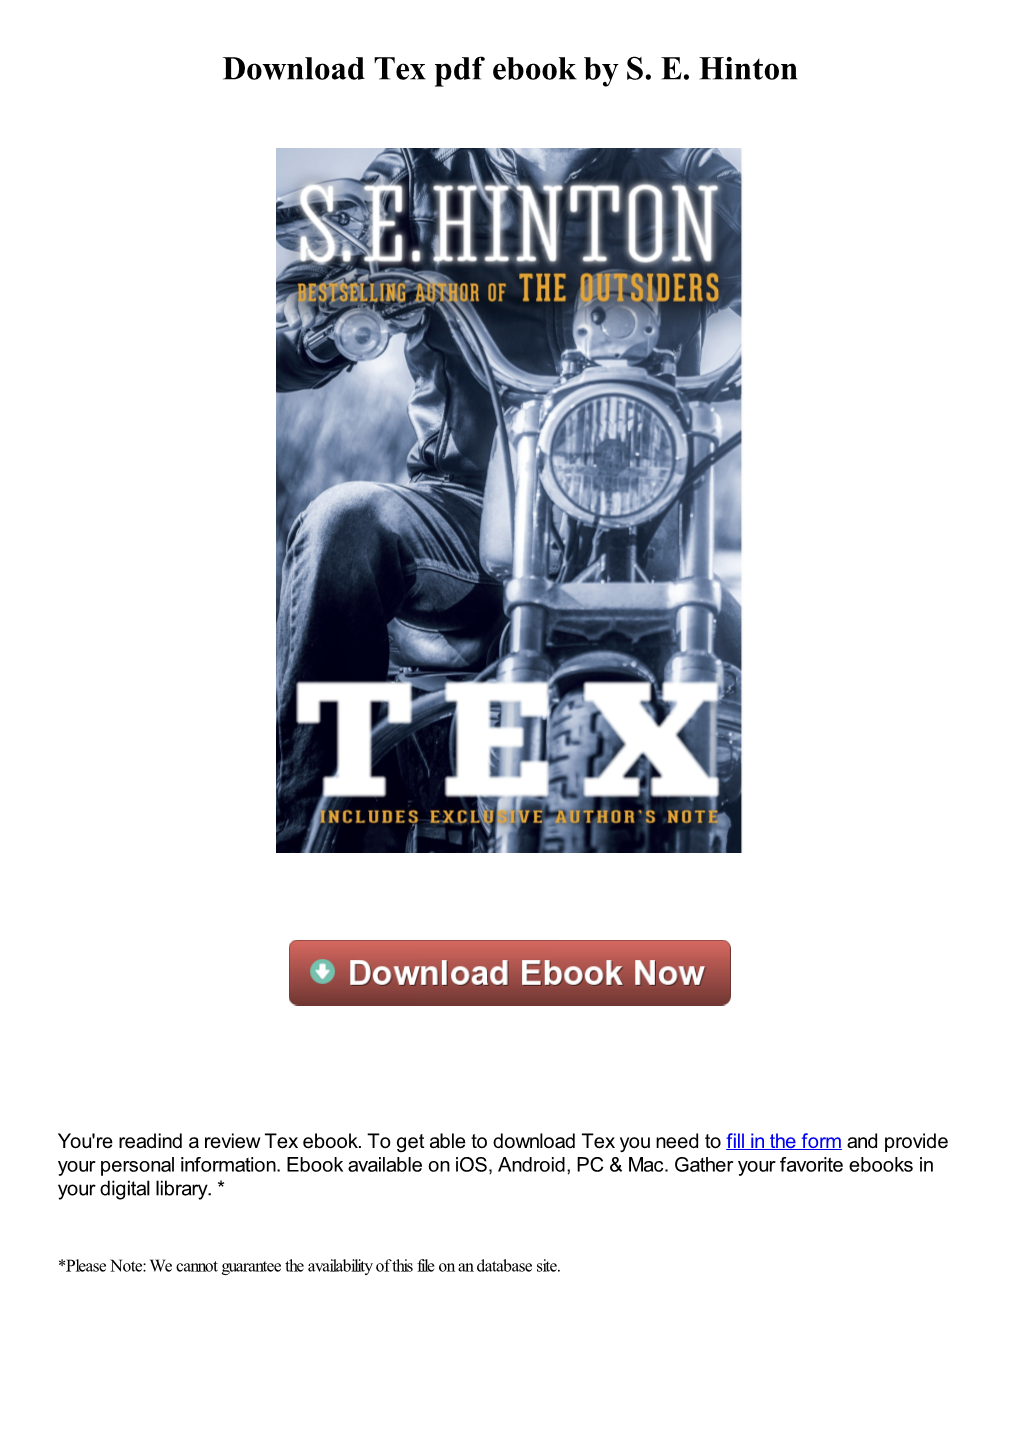 Download Tex Pdf Ebook by SE Hinton